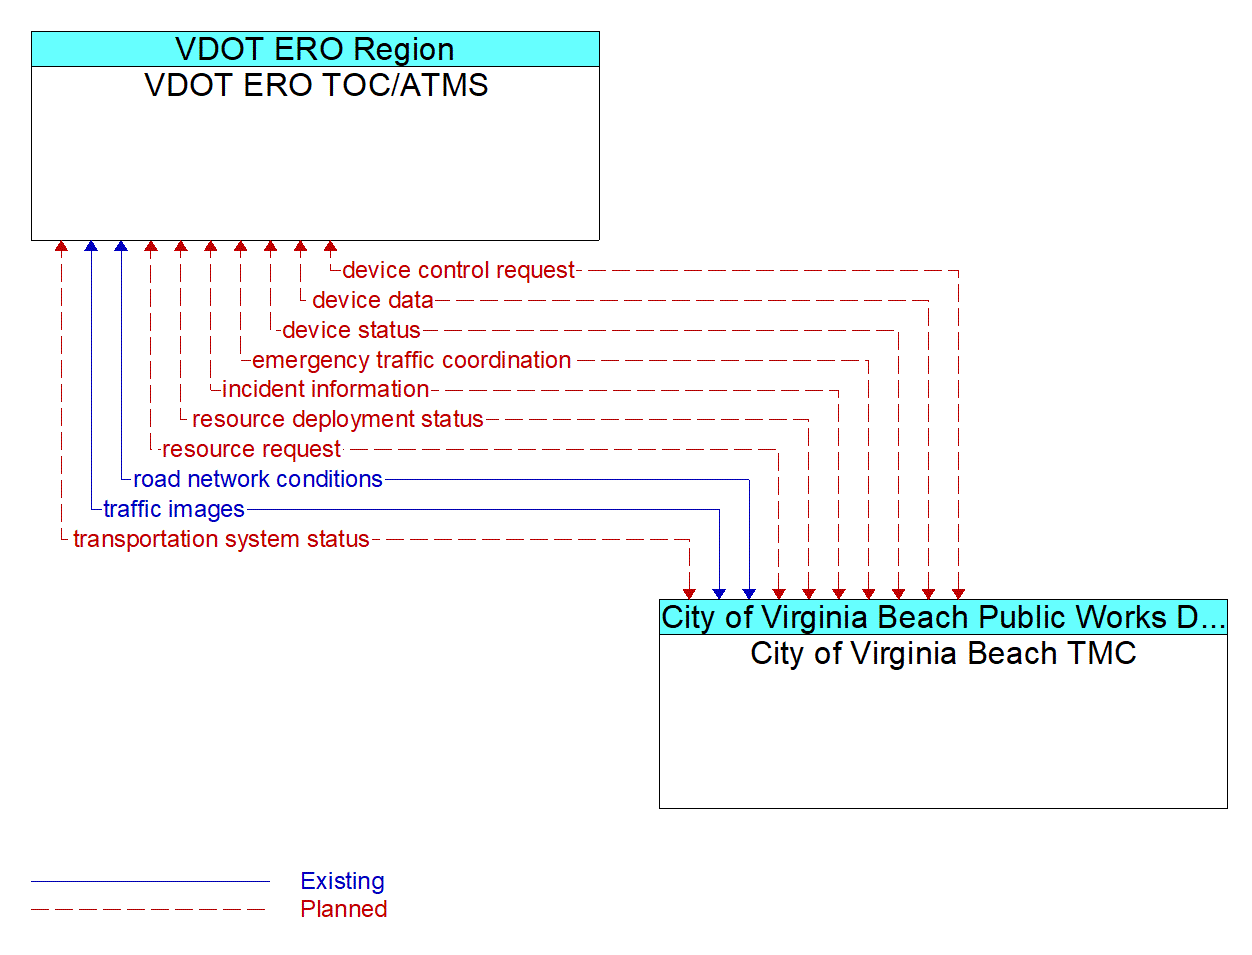 Architecture Flow Diagram: City of Virginia Beach TMC <--> VDOT ERO TOC/ATMS